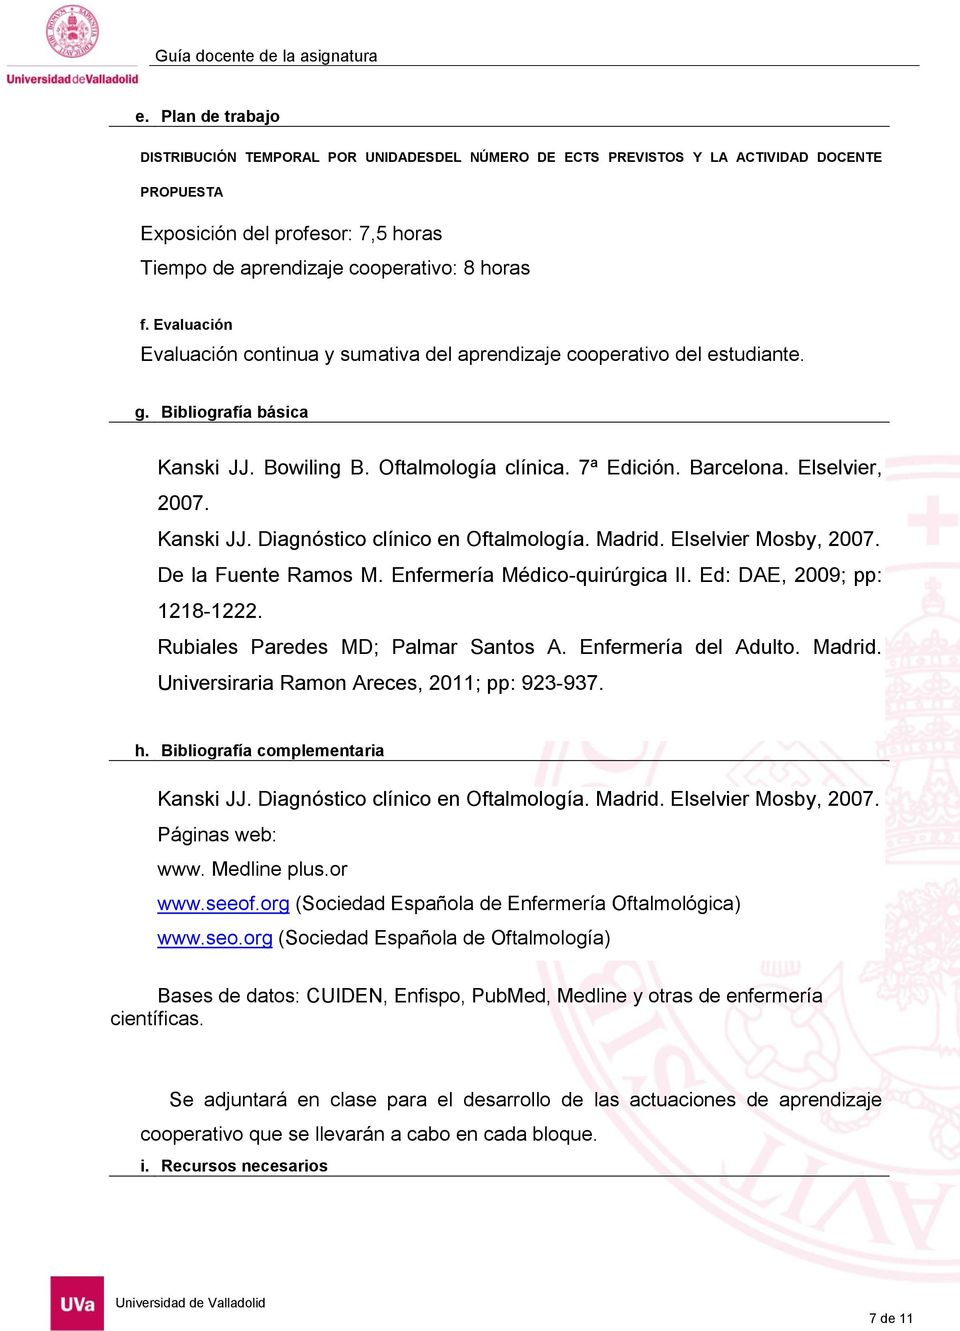 Kanski JJ. Diagnóstico clínico en Oftalmología. Madrid. Elselvier Mosby, 2007. De la Fuente Ramos M. Enfermería Médico-quirúrgica II. Ed: DAE, 2009; pp: 1218-1222.